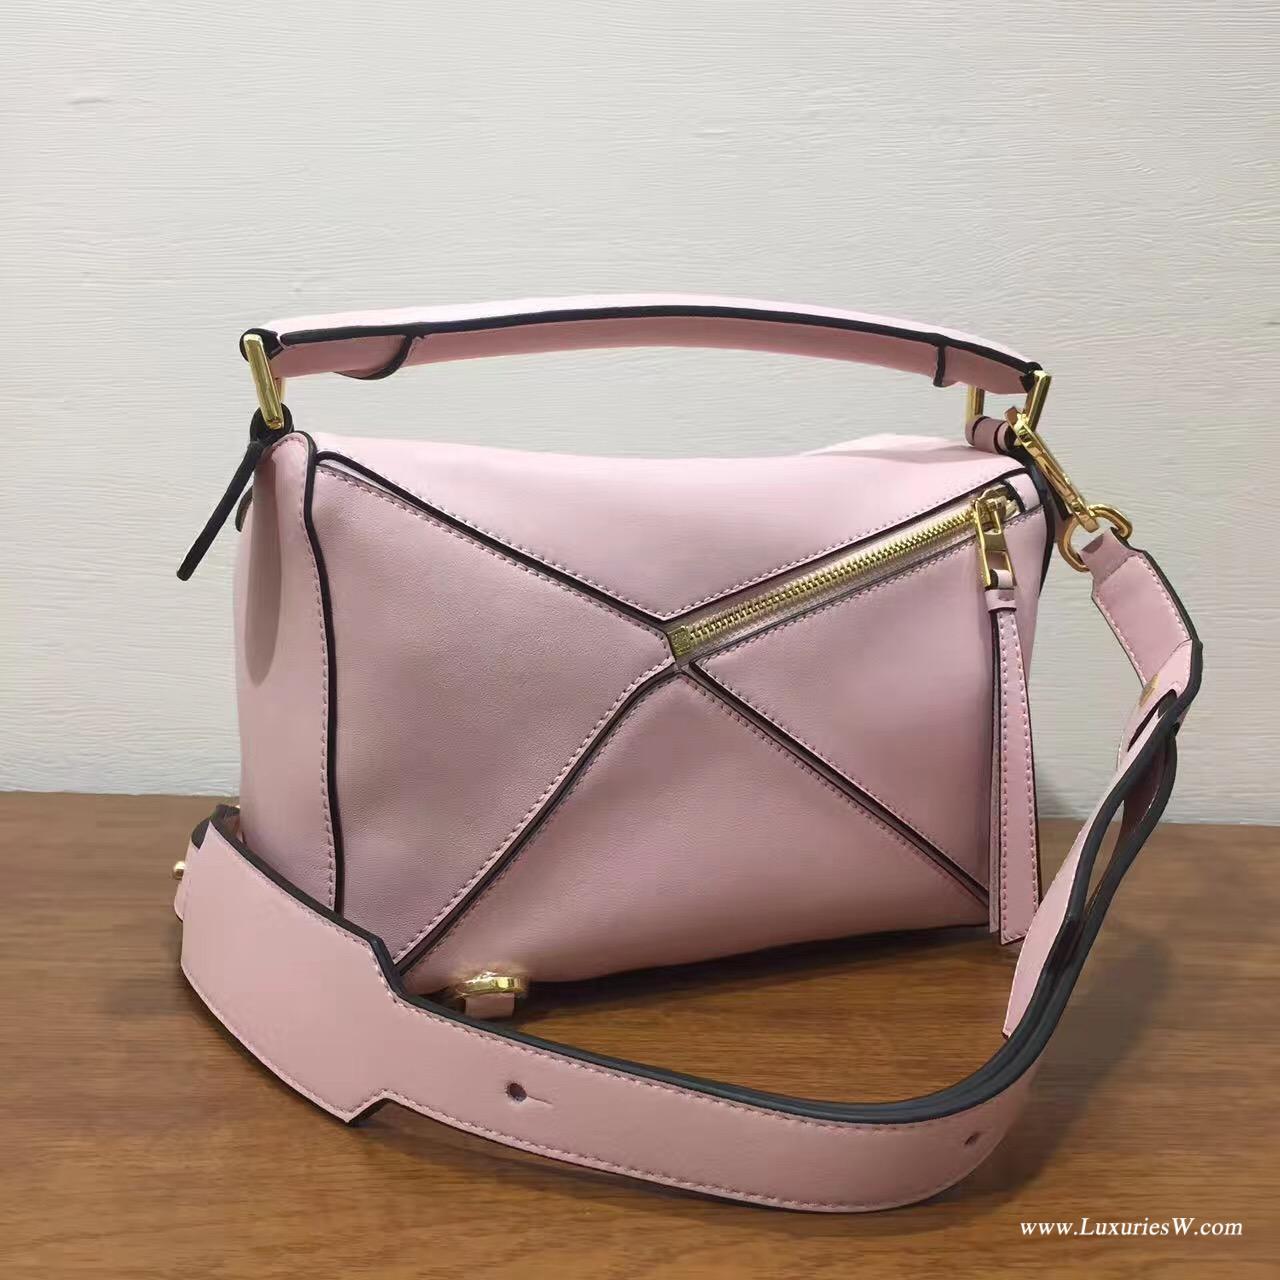 羅意威女包官網 LOEWE Mini Puzzle Bag 粉色 長方體形狀 折疊幾何包